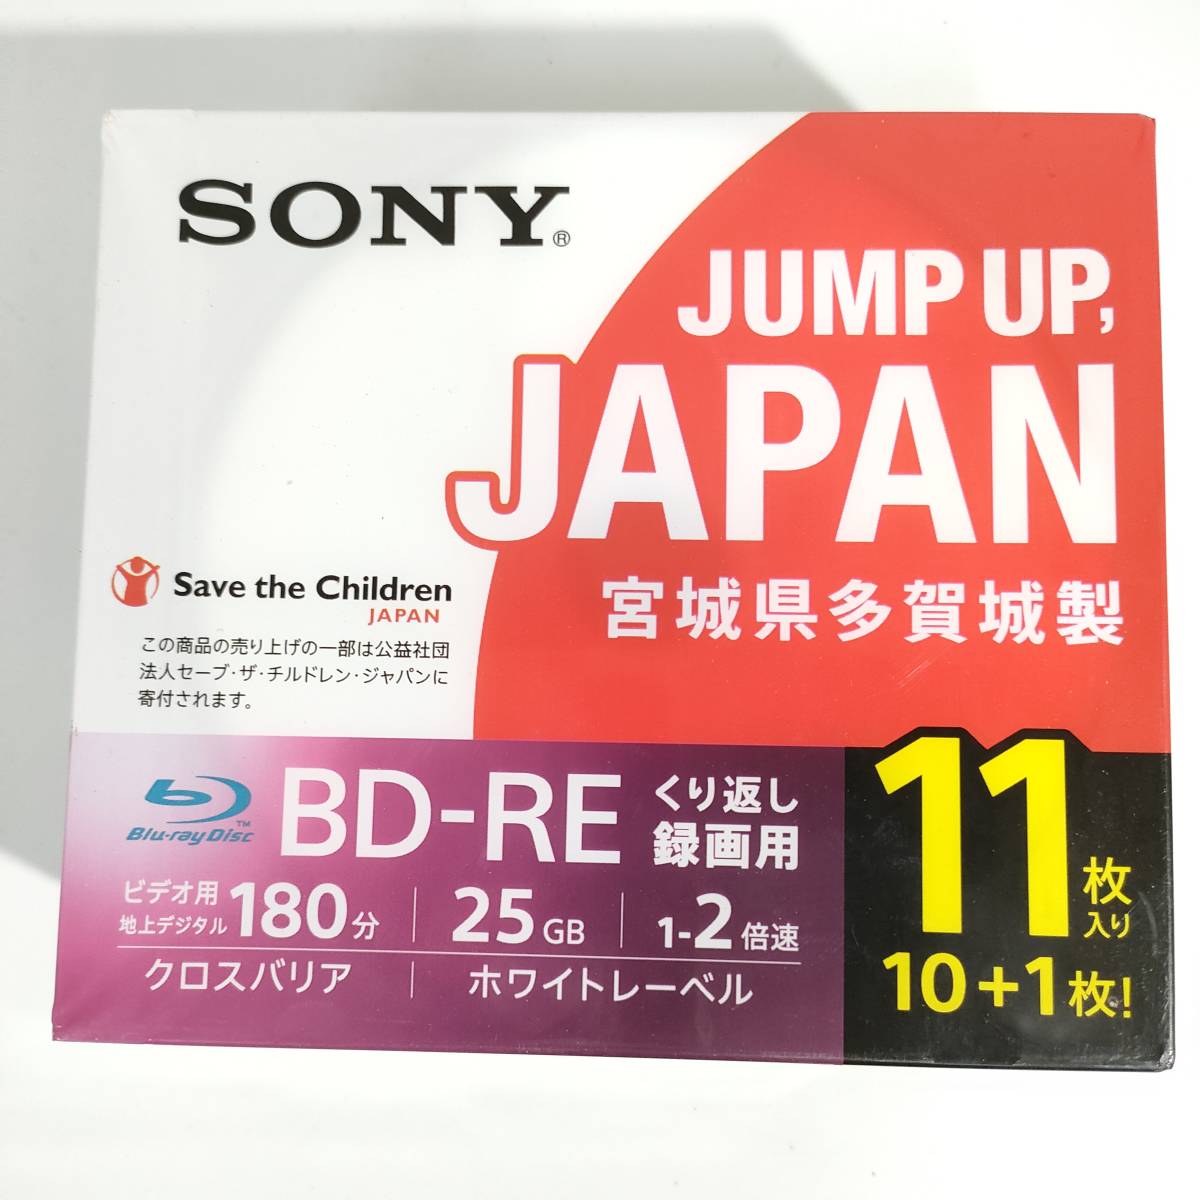 163【未使用品】SONY ソニー JUMP UP,JAPAN 宮城県 多賀城製 BD-RE 25GB繰り返し録画用 180分 11枚 クロスバリア Blu-rayの画像1